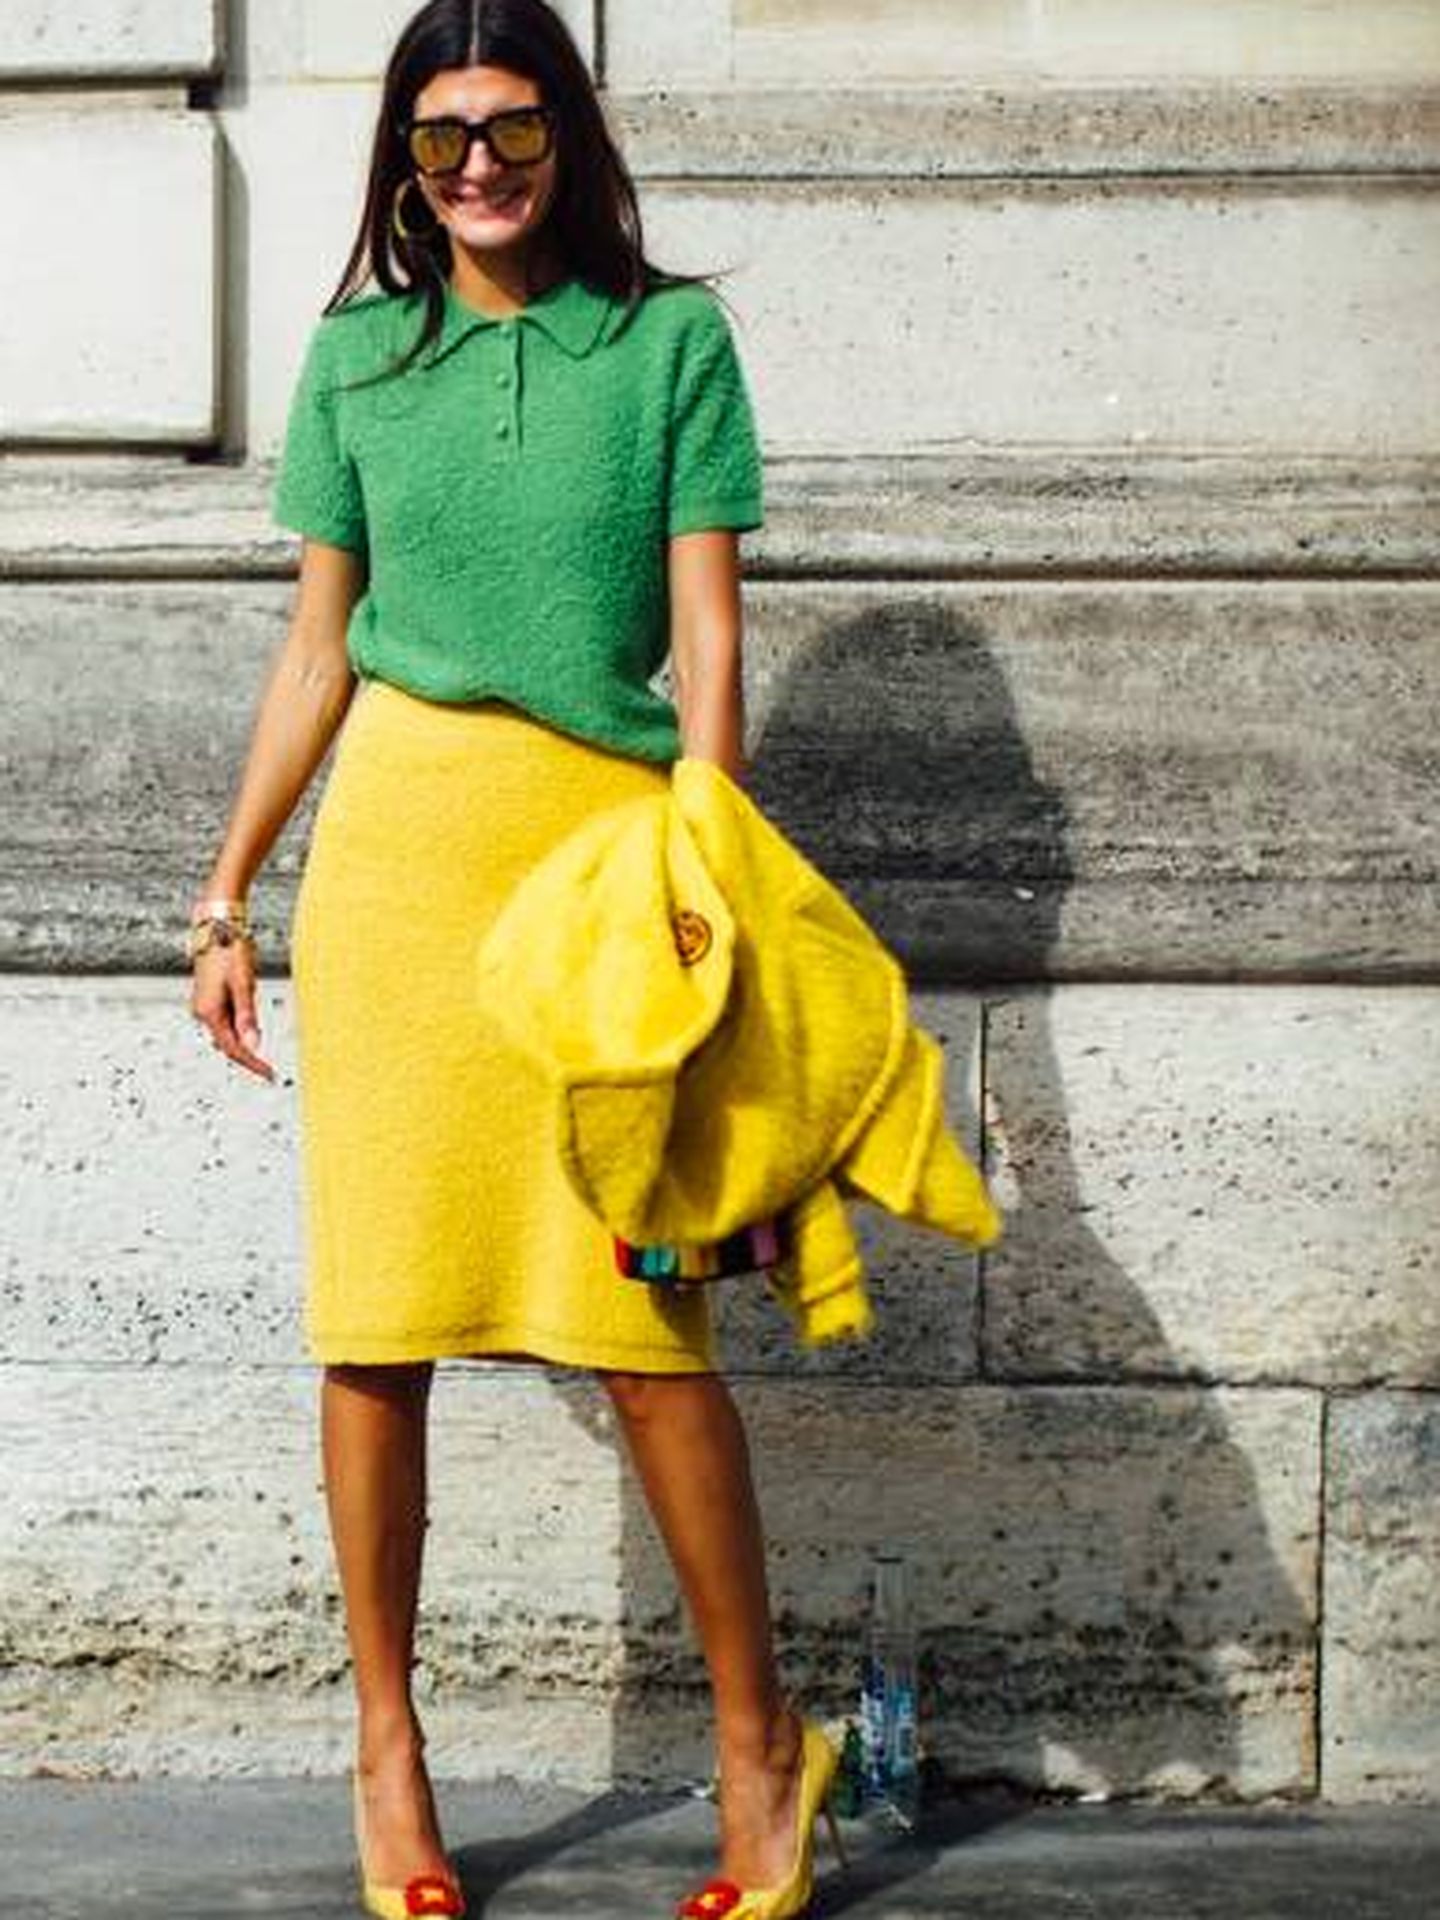 Giovanna Battaglia Engelbert posa en las calles de París con un polo verde.  (Imaxtree)